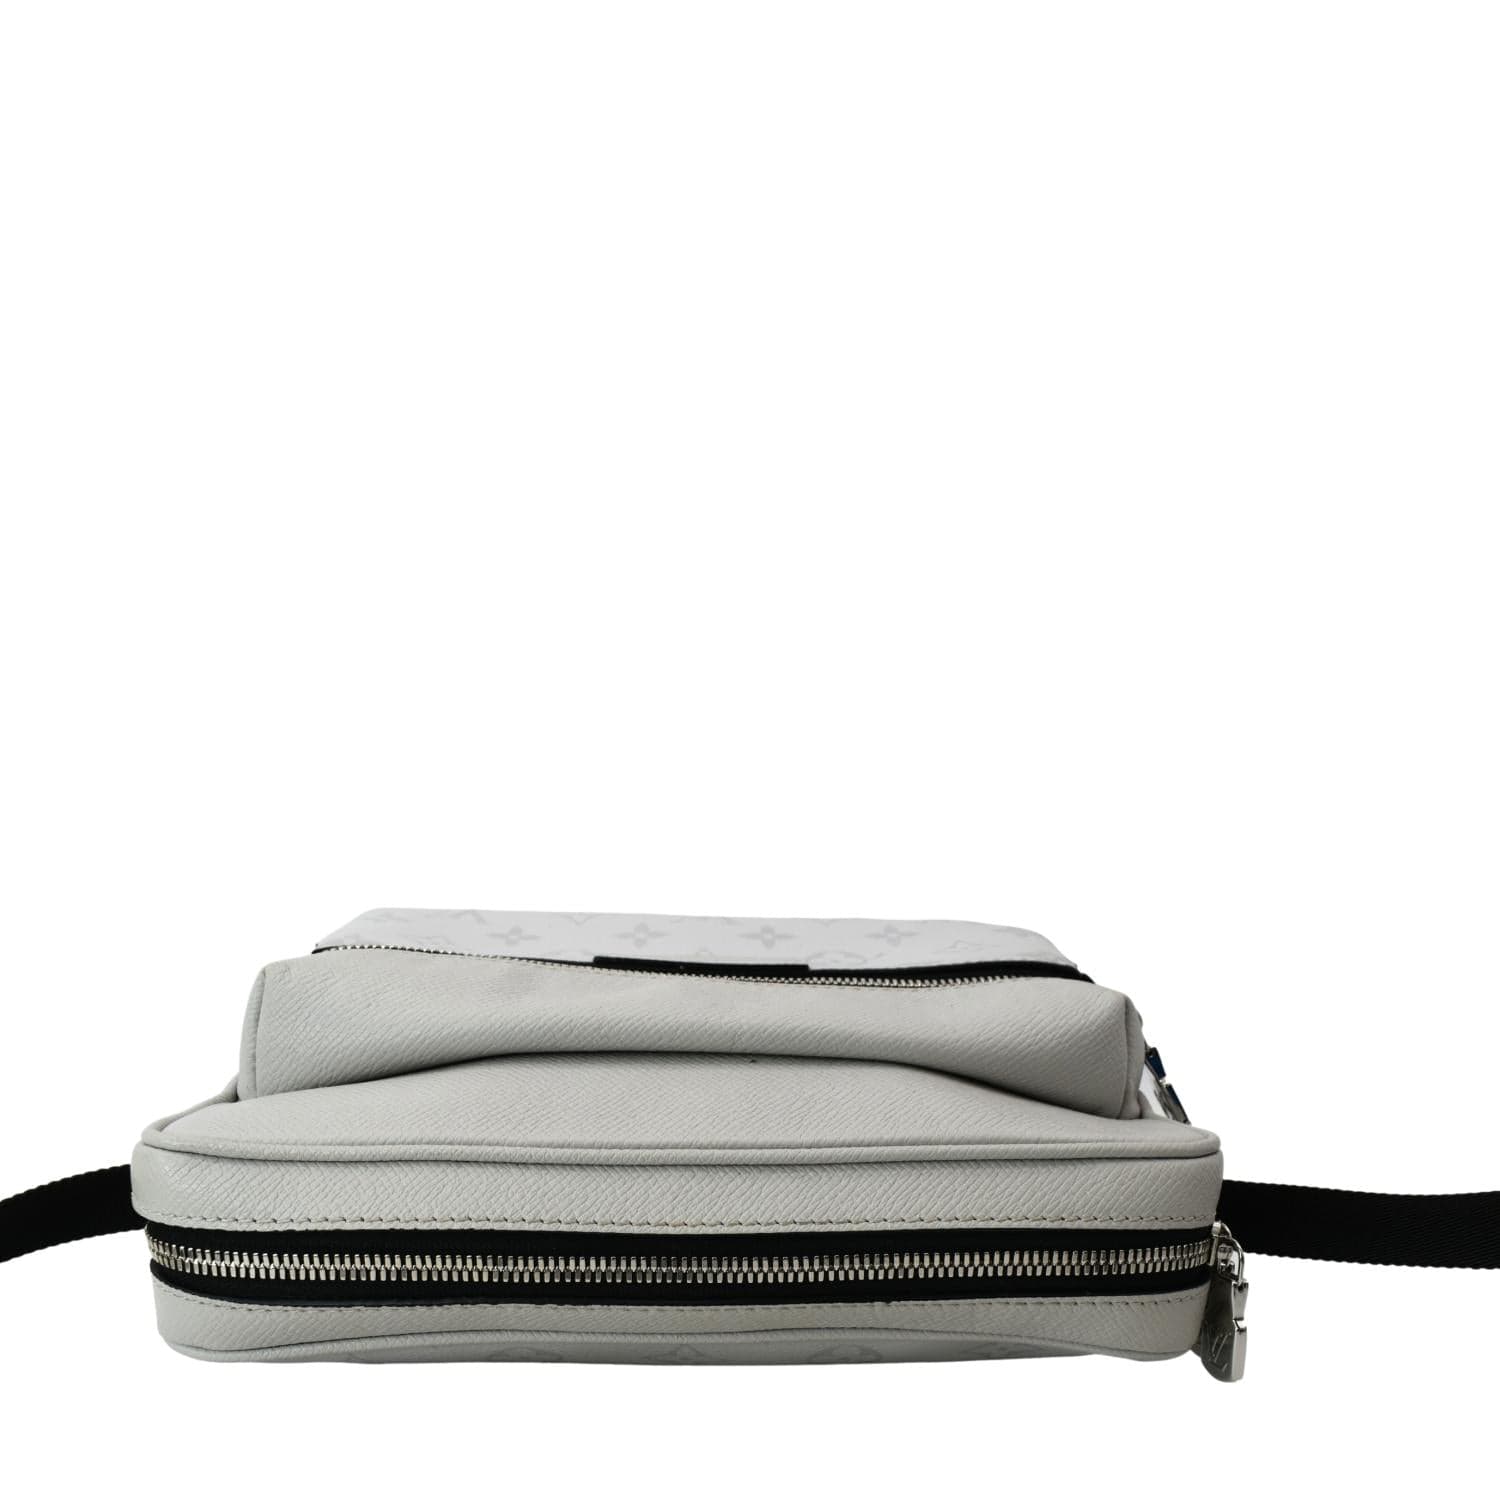 Black Louis Vuitton Taiga Outdoor Messenger Crossbody Bag – Designer Revival